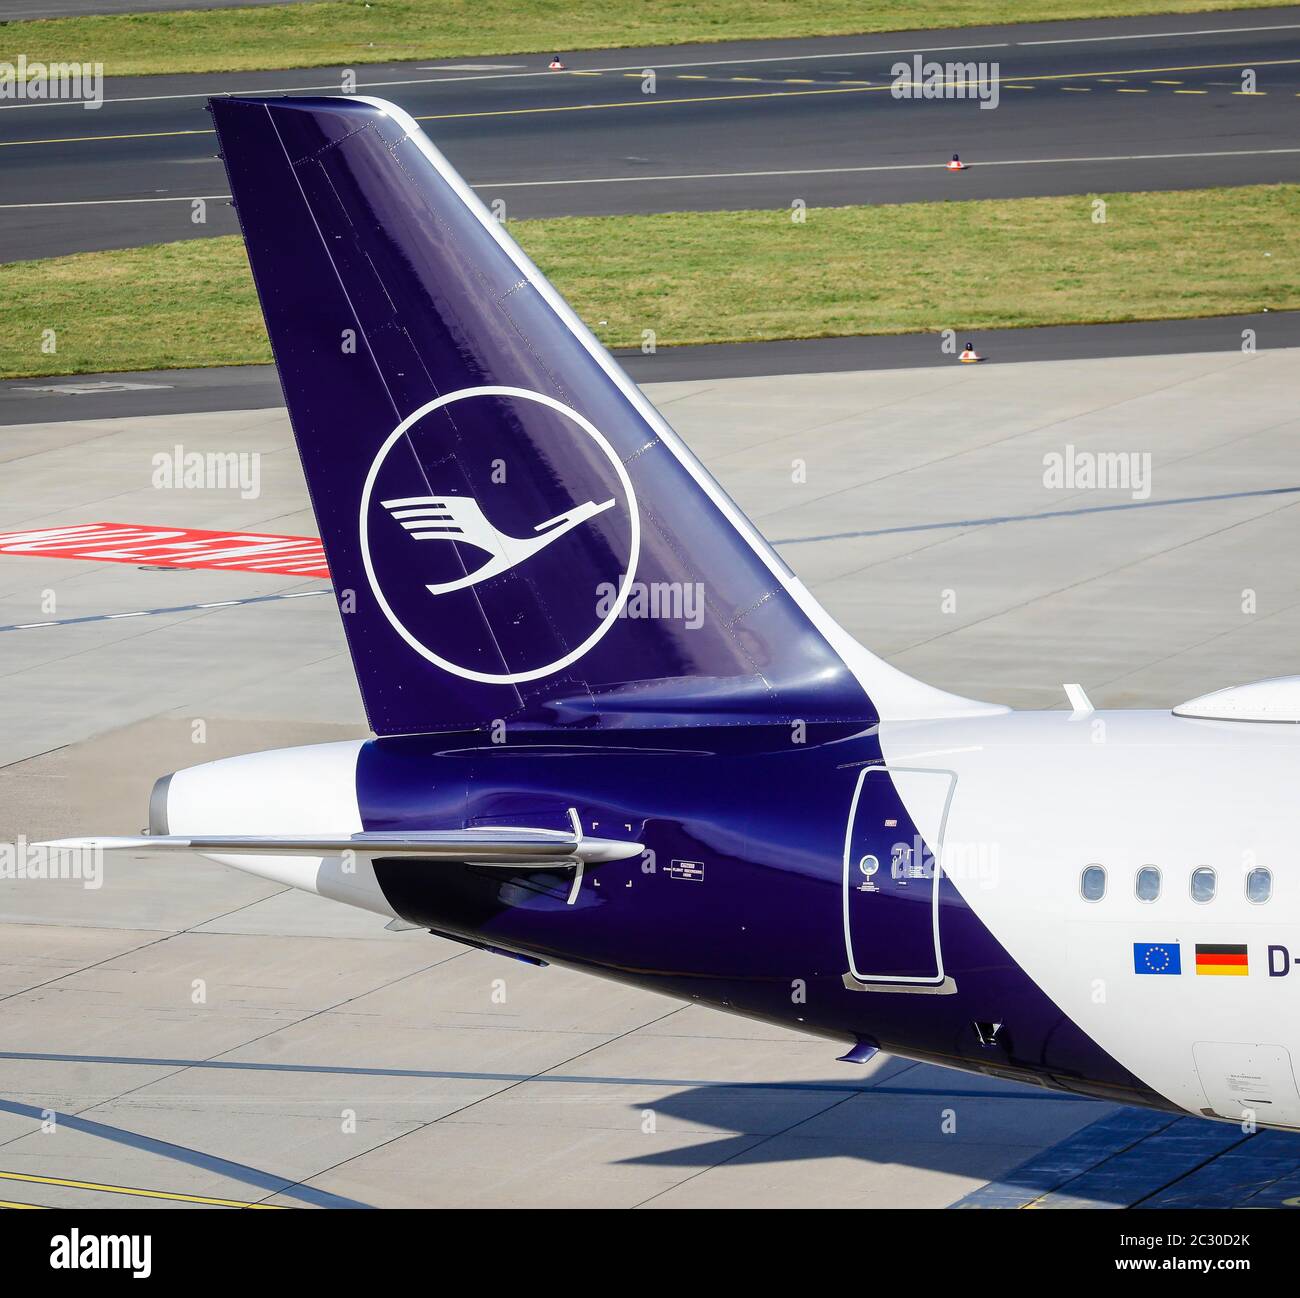 Lufthansa, Airbus A321-231 en attente de départ à l'aéroport international de Düsseldorf, D-AIDI, Düsseldorf, Rhénanie-du-Nord-Westphalie, Allemagne Banque D'Images